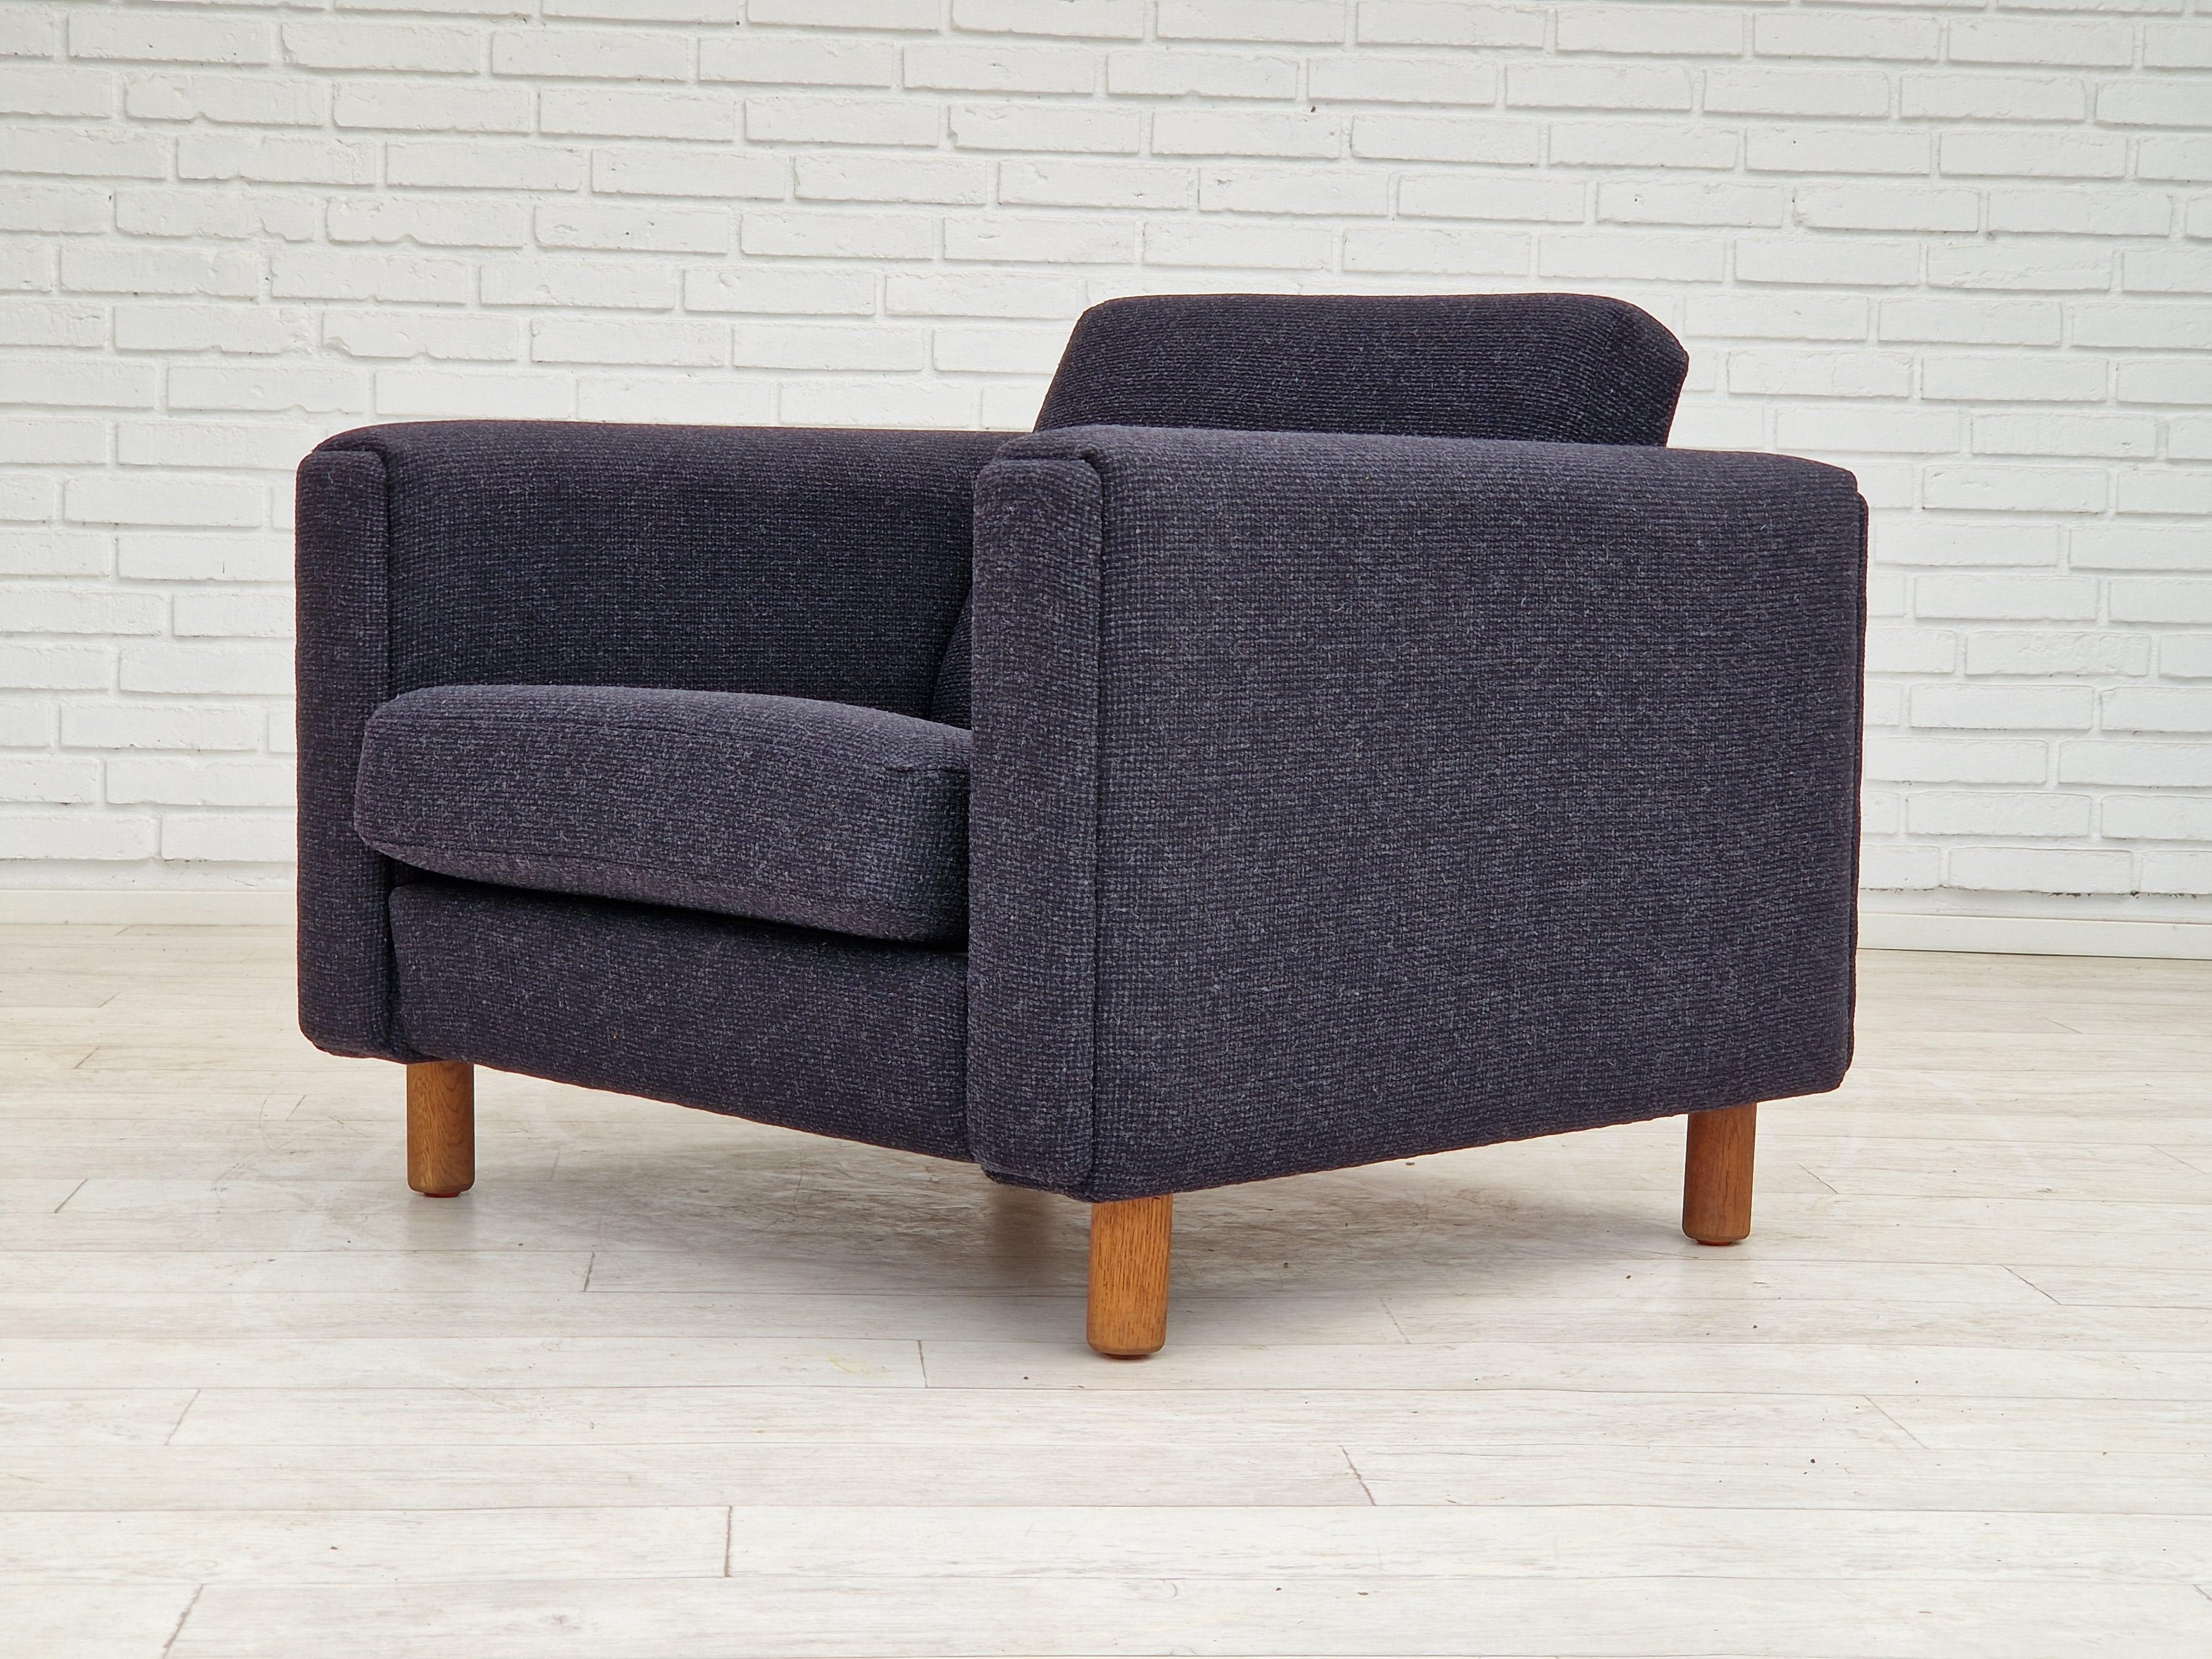 Scandinavian Modern 1970s, Danish design by H.J. Wegner, reupholstered armchair, model GE300. For Sale